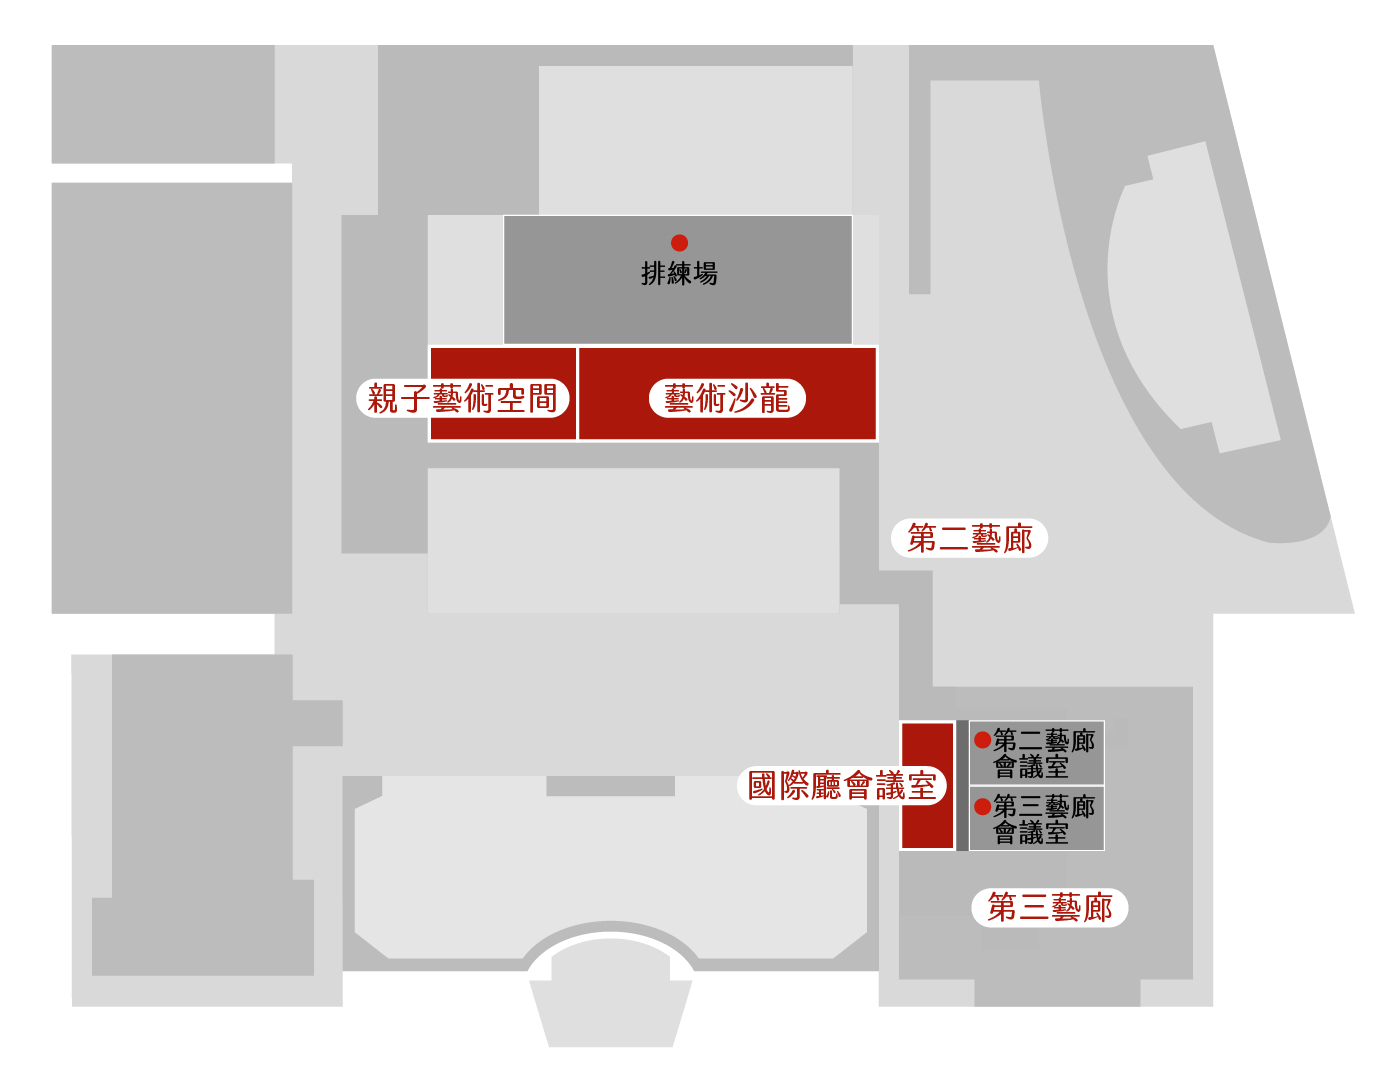 臺南文化中心地下一樓平面圖